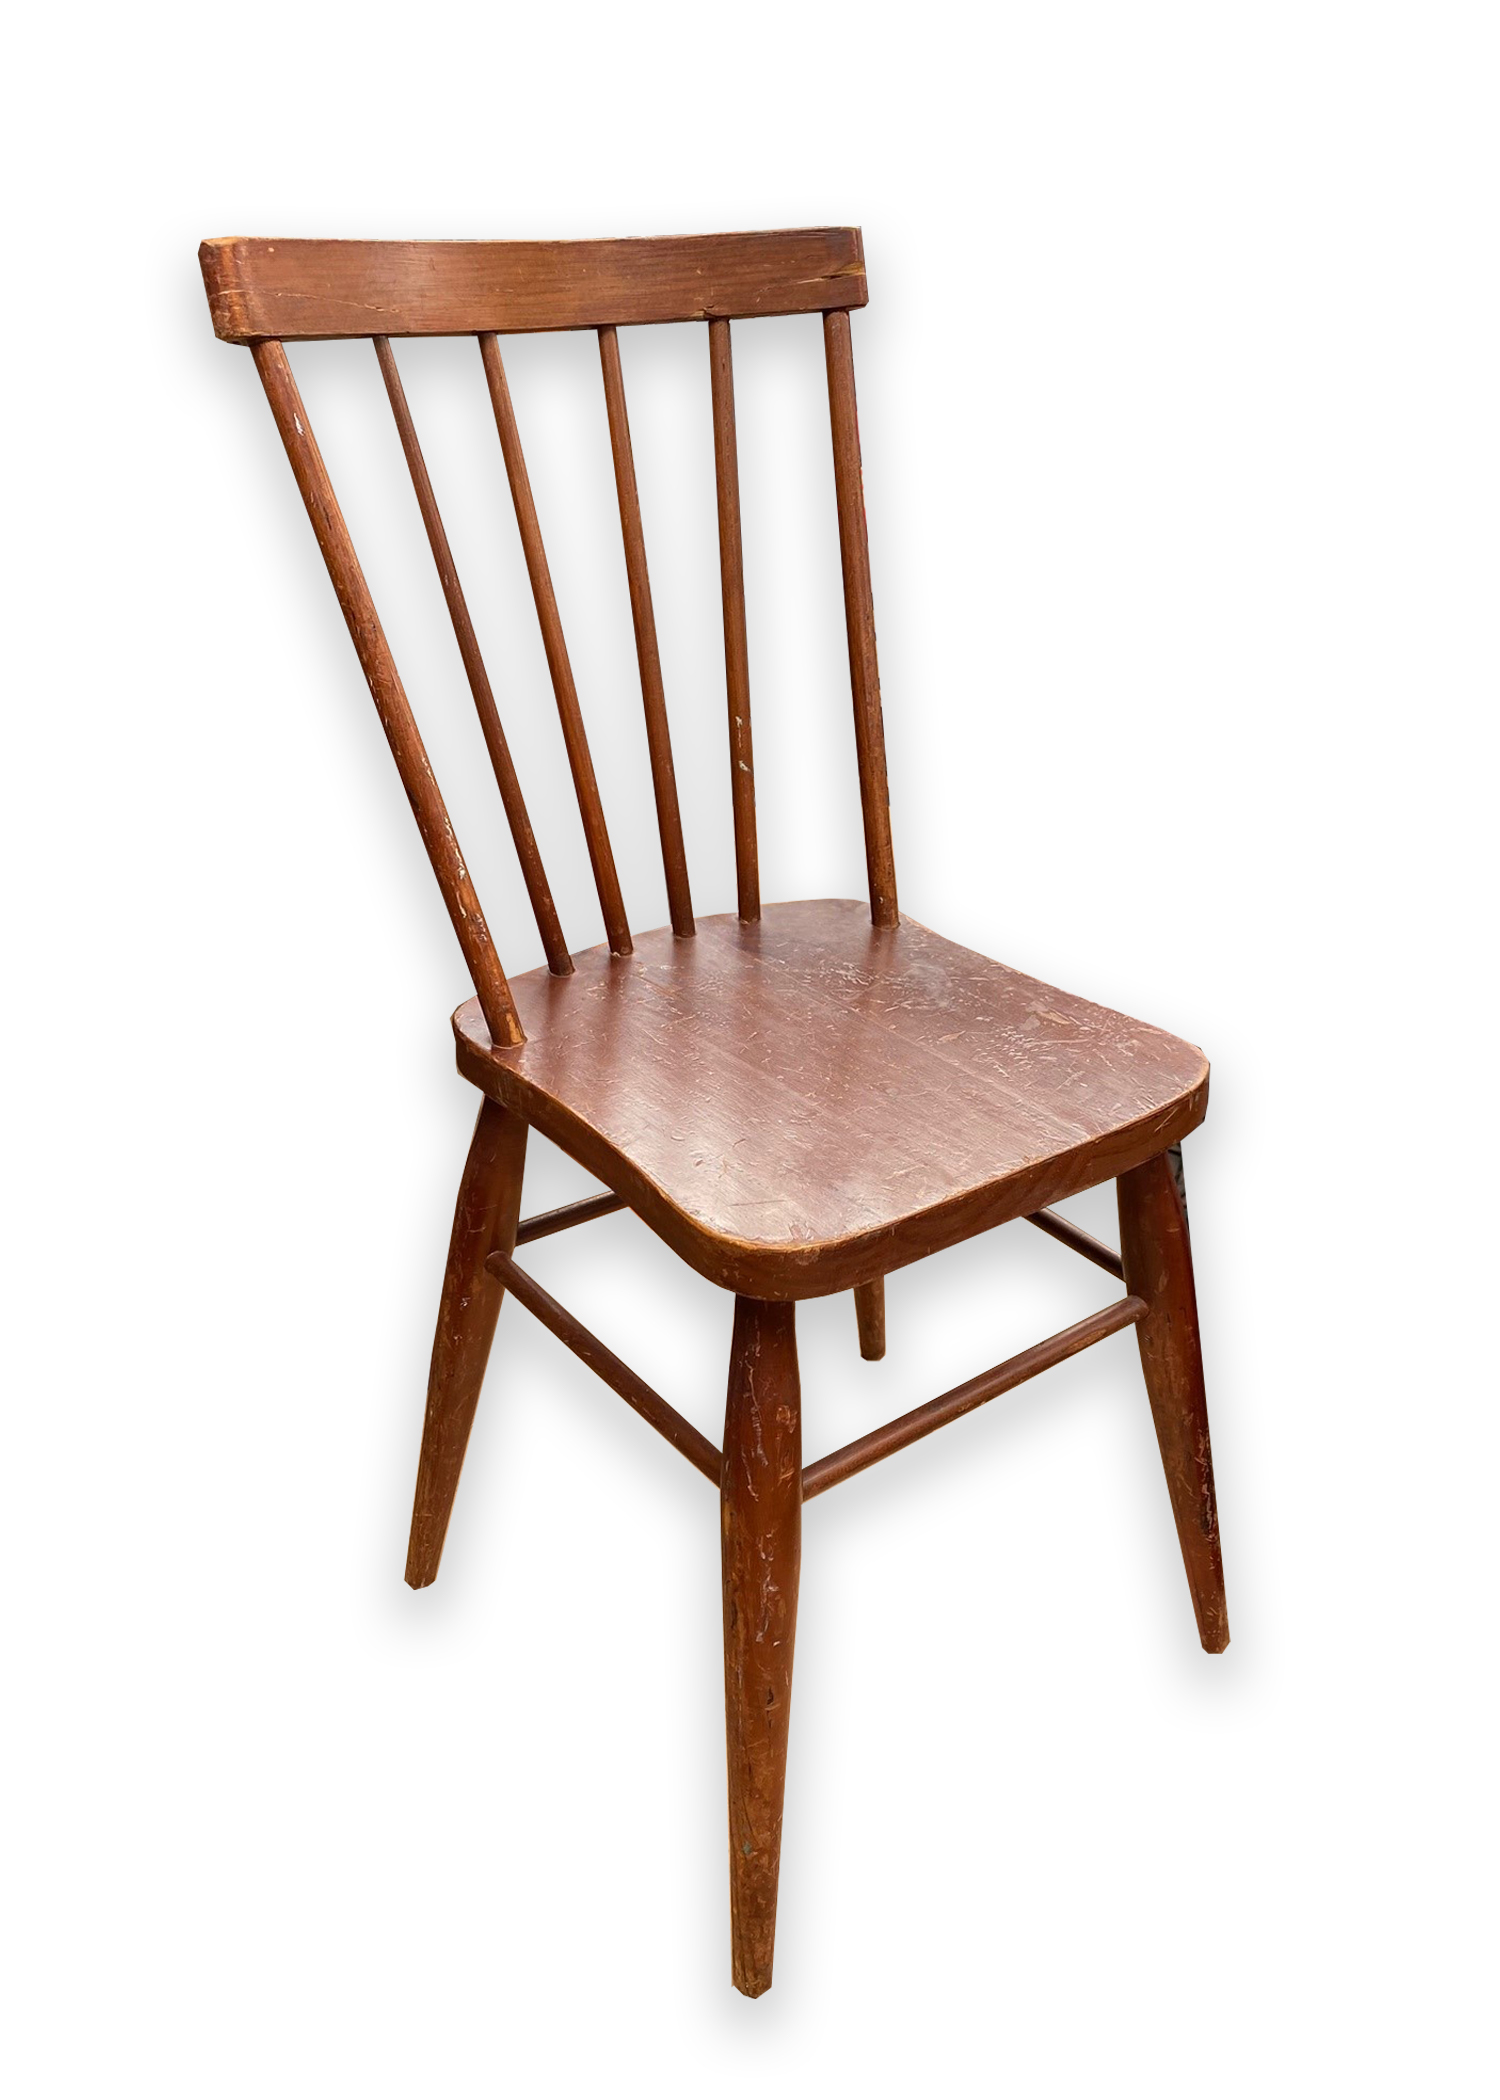 Kitchen Chair Wooden Spindle Back (H: 90cm x W: 35cm x D: 40cm)